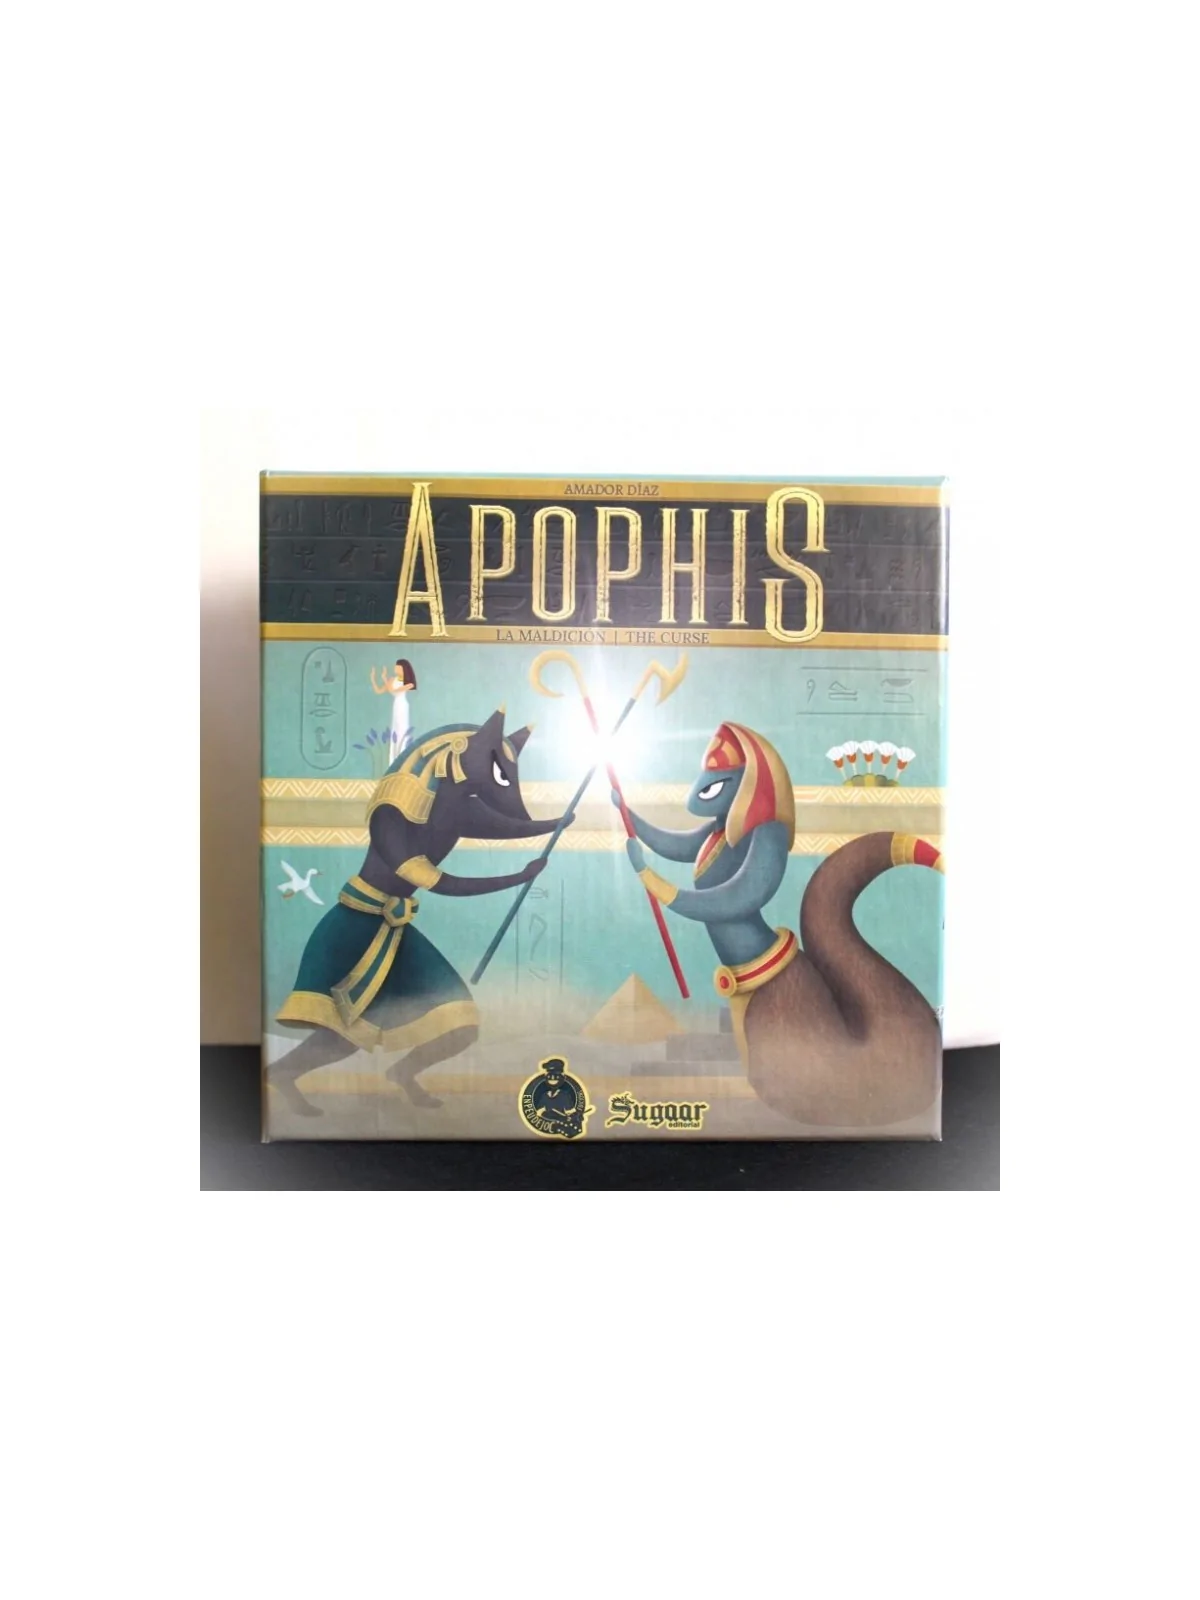 Comprar Apophis: La Maldicion barato al mejor precio 20,00 € de Enpeud